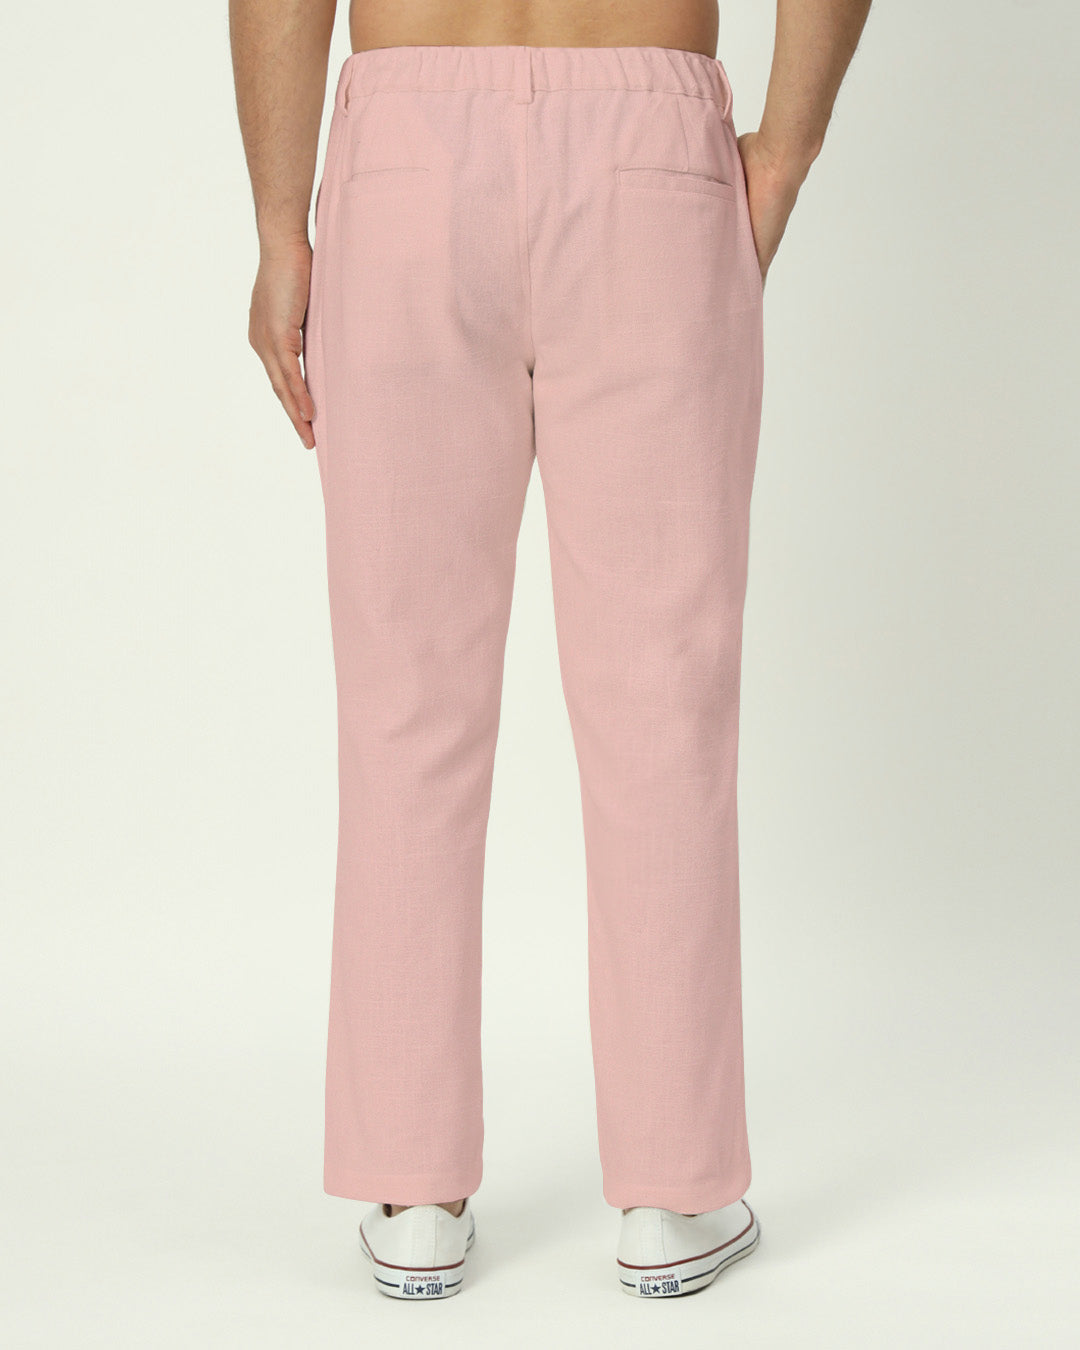 All-Day Wear Fondant Pink Men's Pants